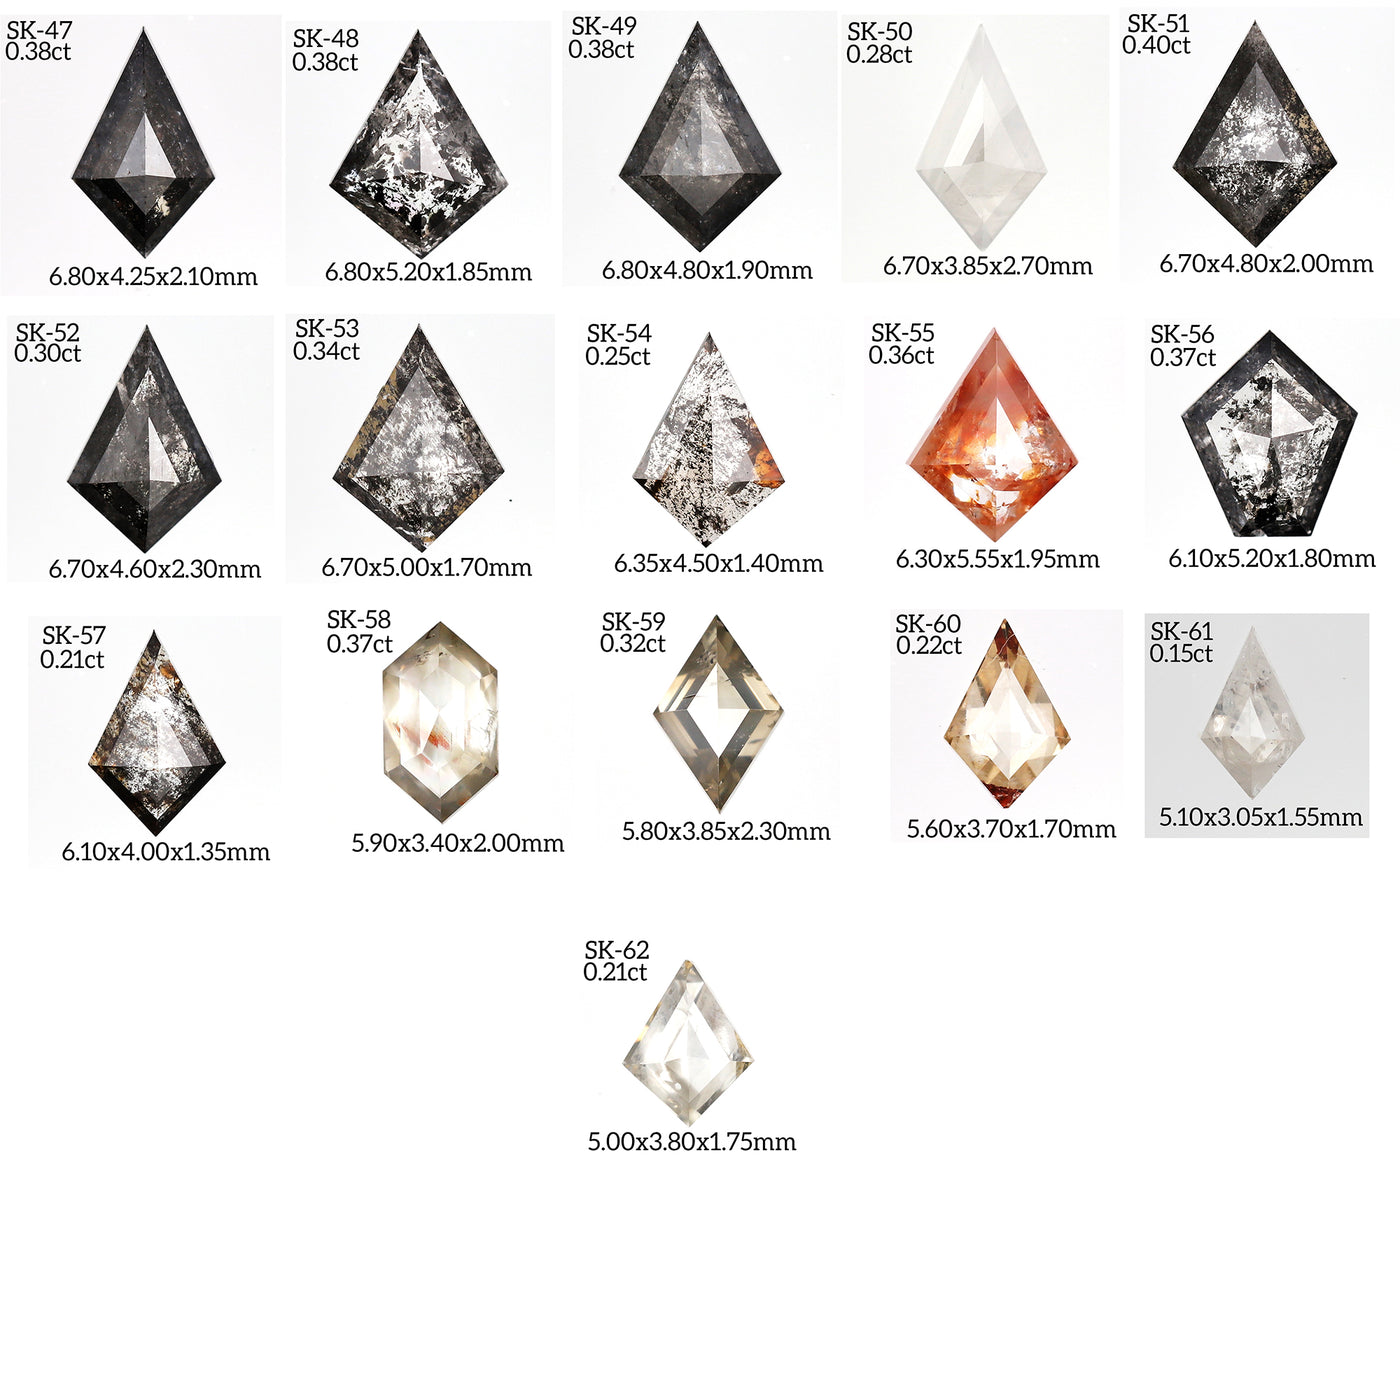 SK46 - Salt and pepper kite diamond